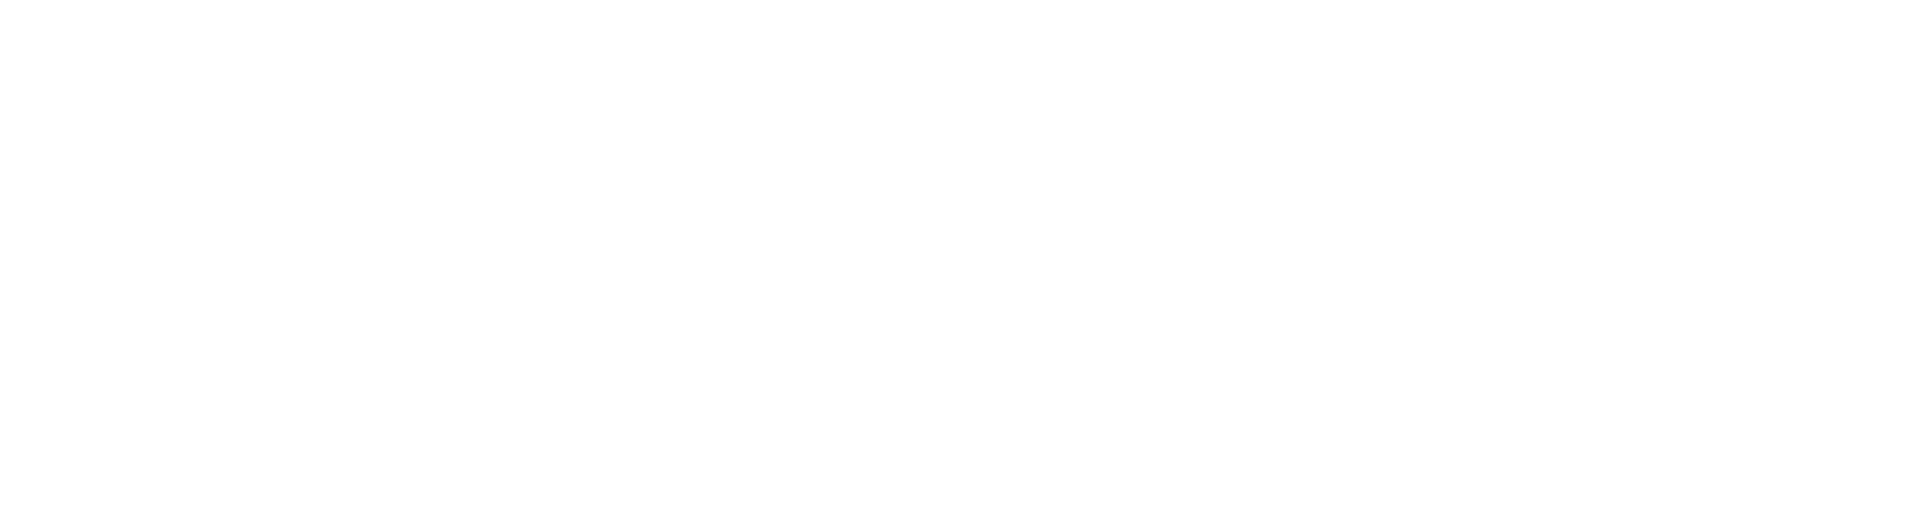 torrey pines logo